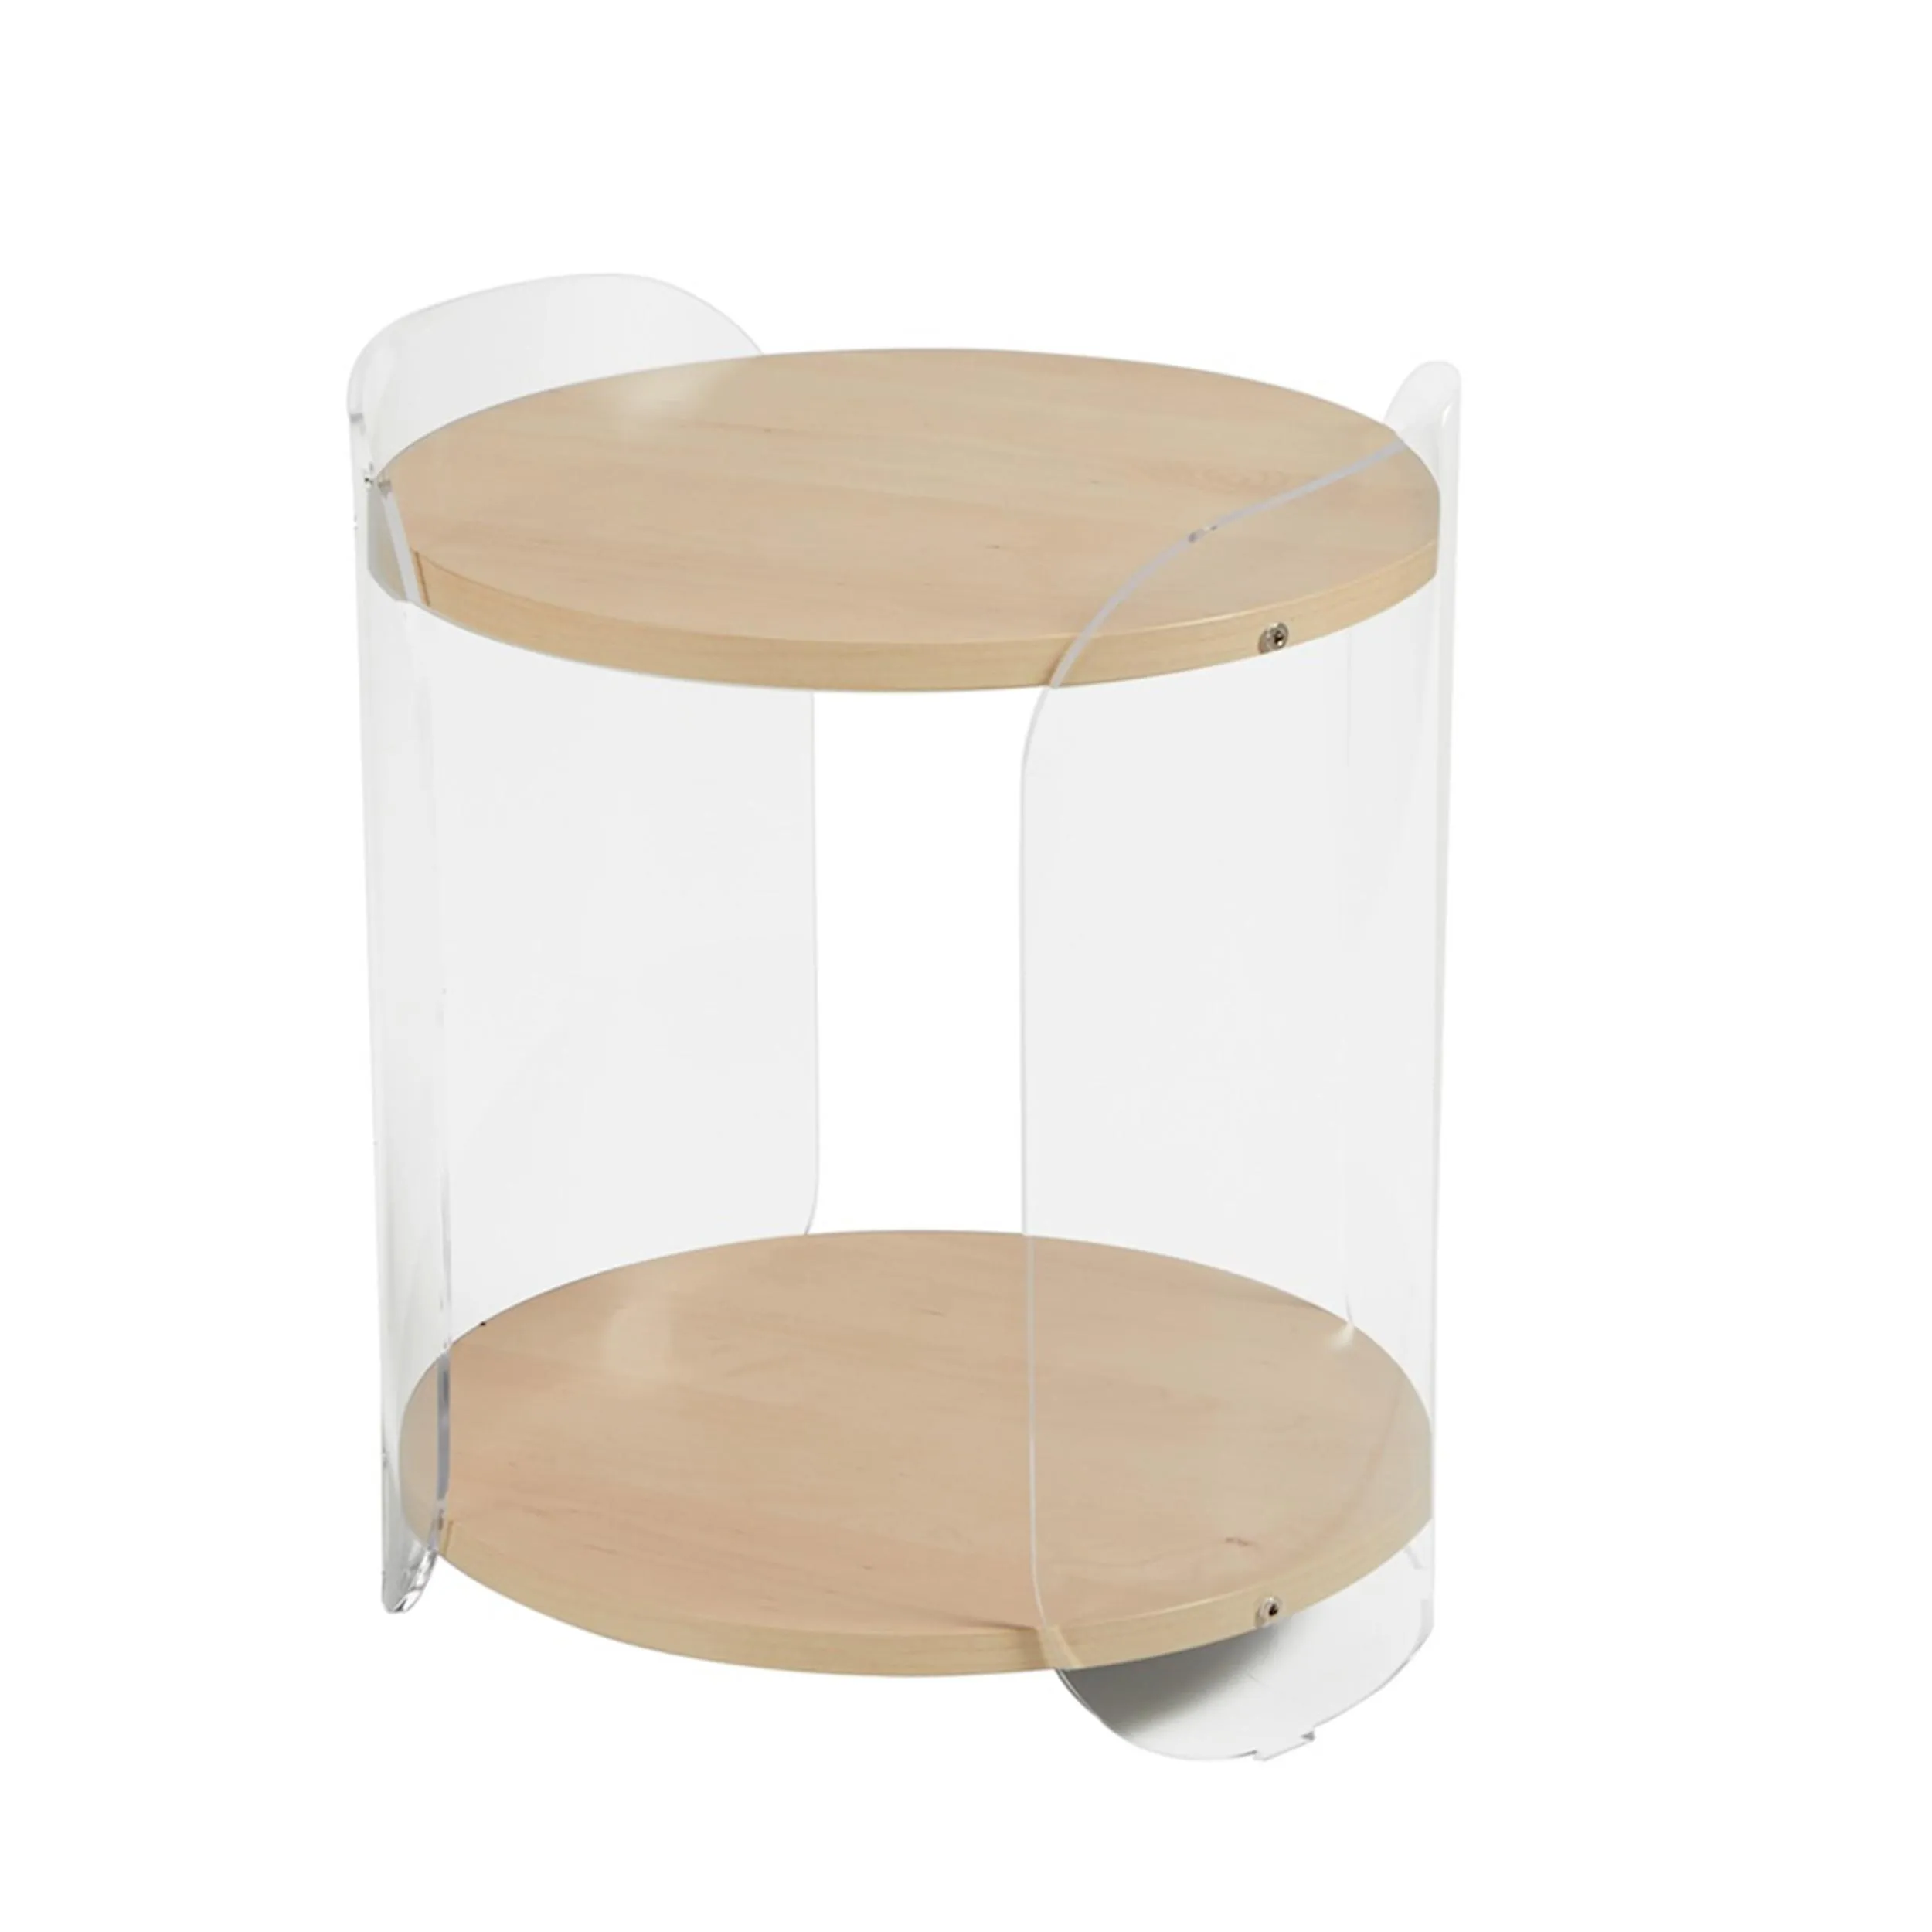 Tavolinetto, comodino in metacrilato Trasparente ALVIN 41x41xh49 cm con ripiano in legno nobilitato particolari in acciaio lucido acero mondial